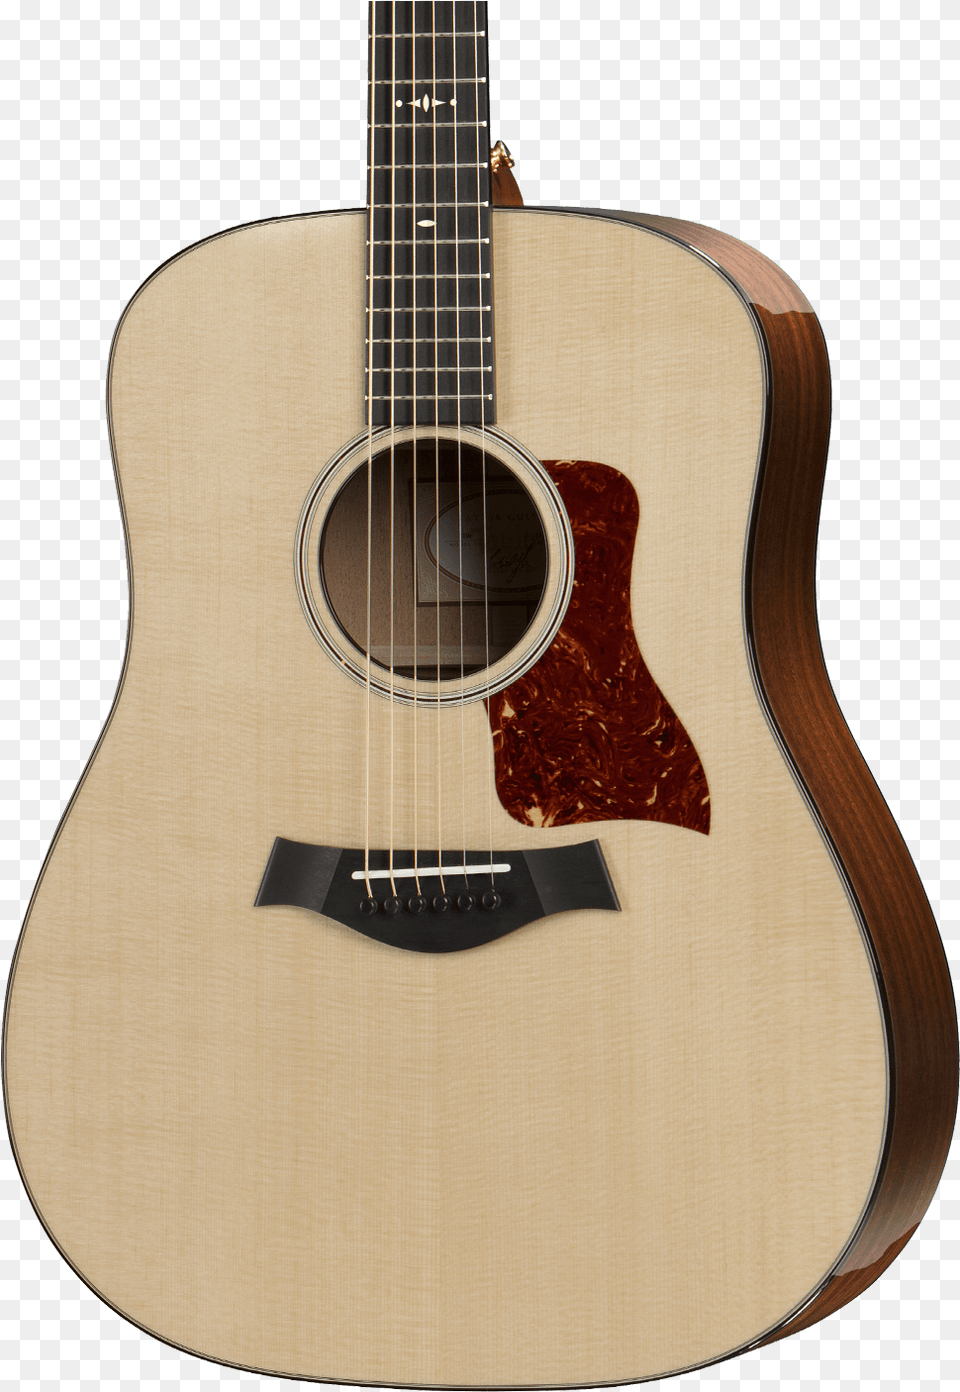 Taylor, Guitar, Musical Instrument, Bass Guitar Png Image